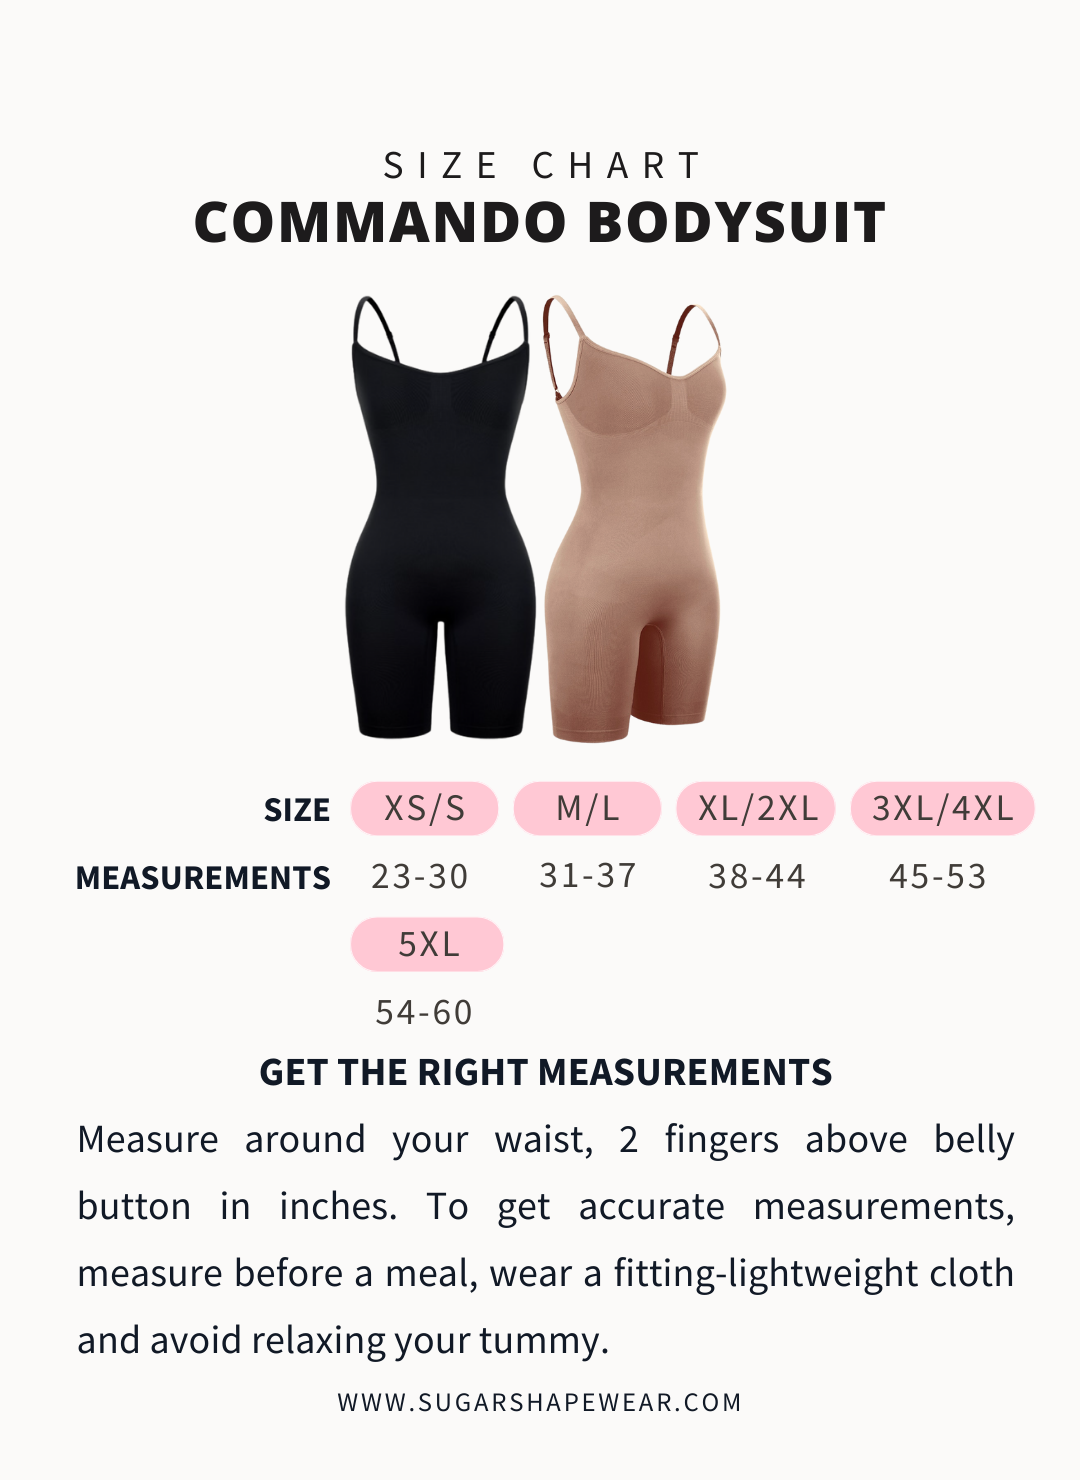 Commando Bodysuit